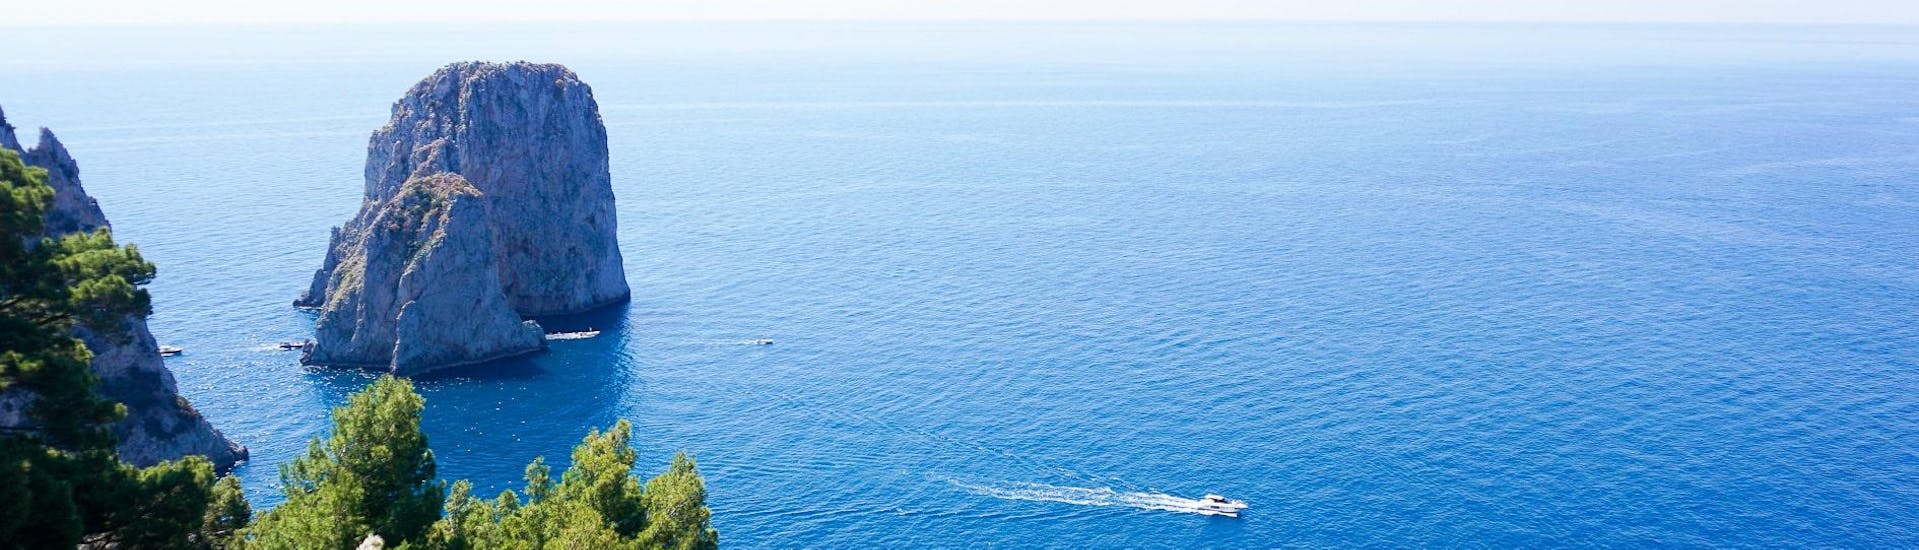 Tempo ideale per la gita in barca di mezza giornata da Sorrento a Capri inclusa la Grotta Azzurra.